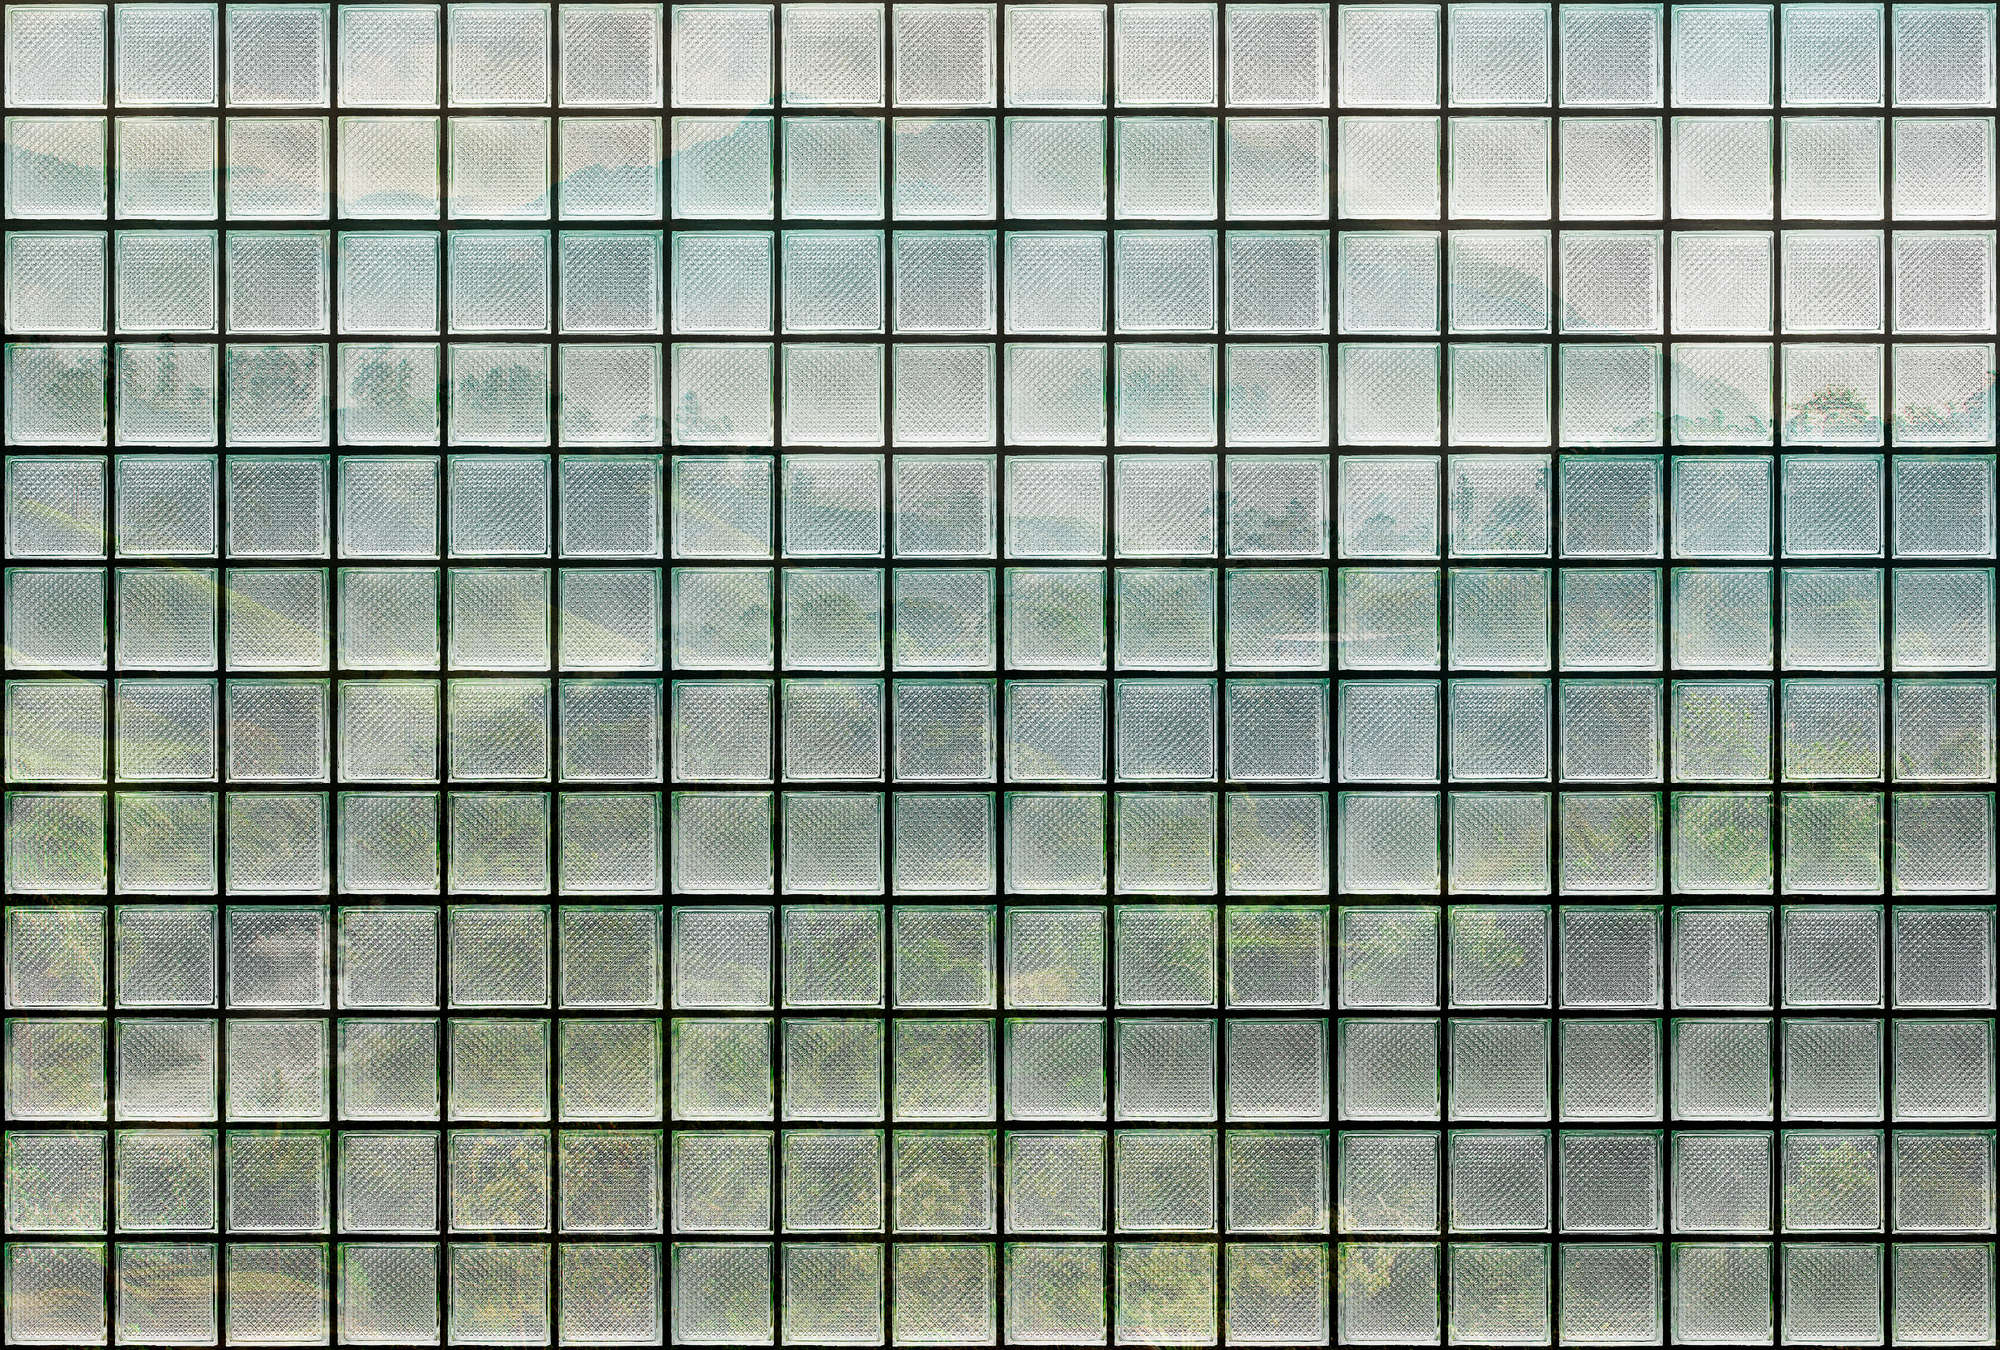             Green House 3 - Papier peint fenêtre briques de verre & forêt tropicale
        